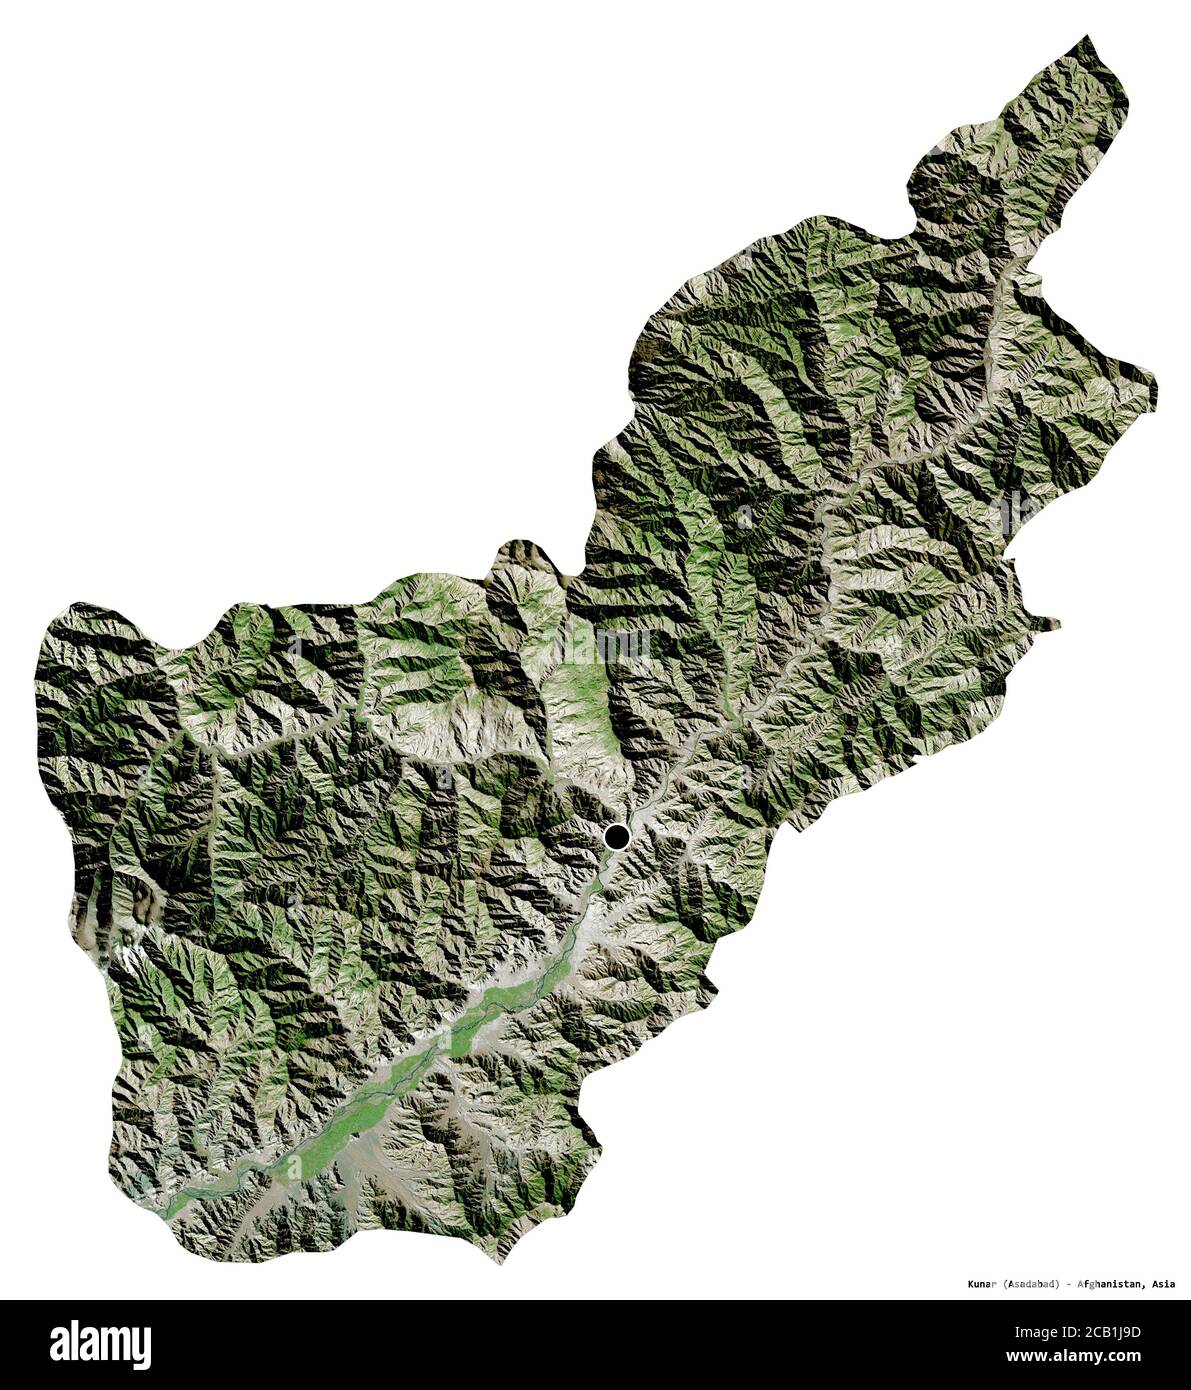 Forma di Kunar, provincia dell'Afghanistan, con la sua capitale isolata su sfondo bianco. Immagini satellitari. Rendering 3D Foto Stock